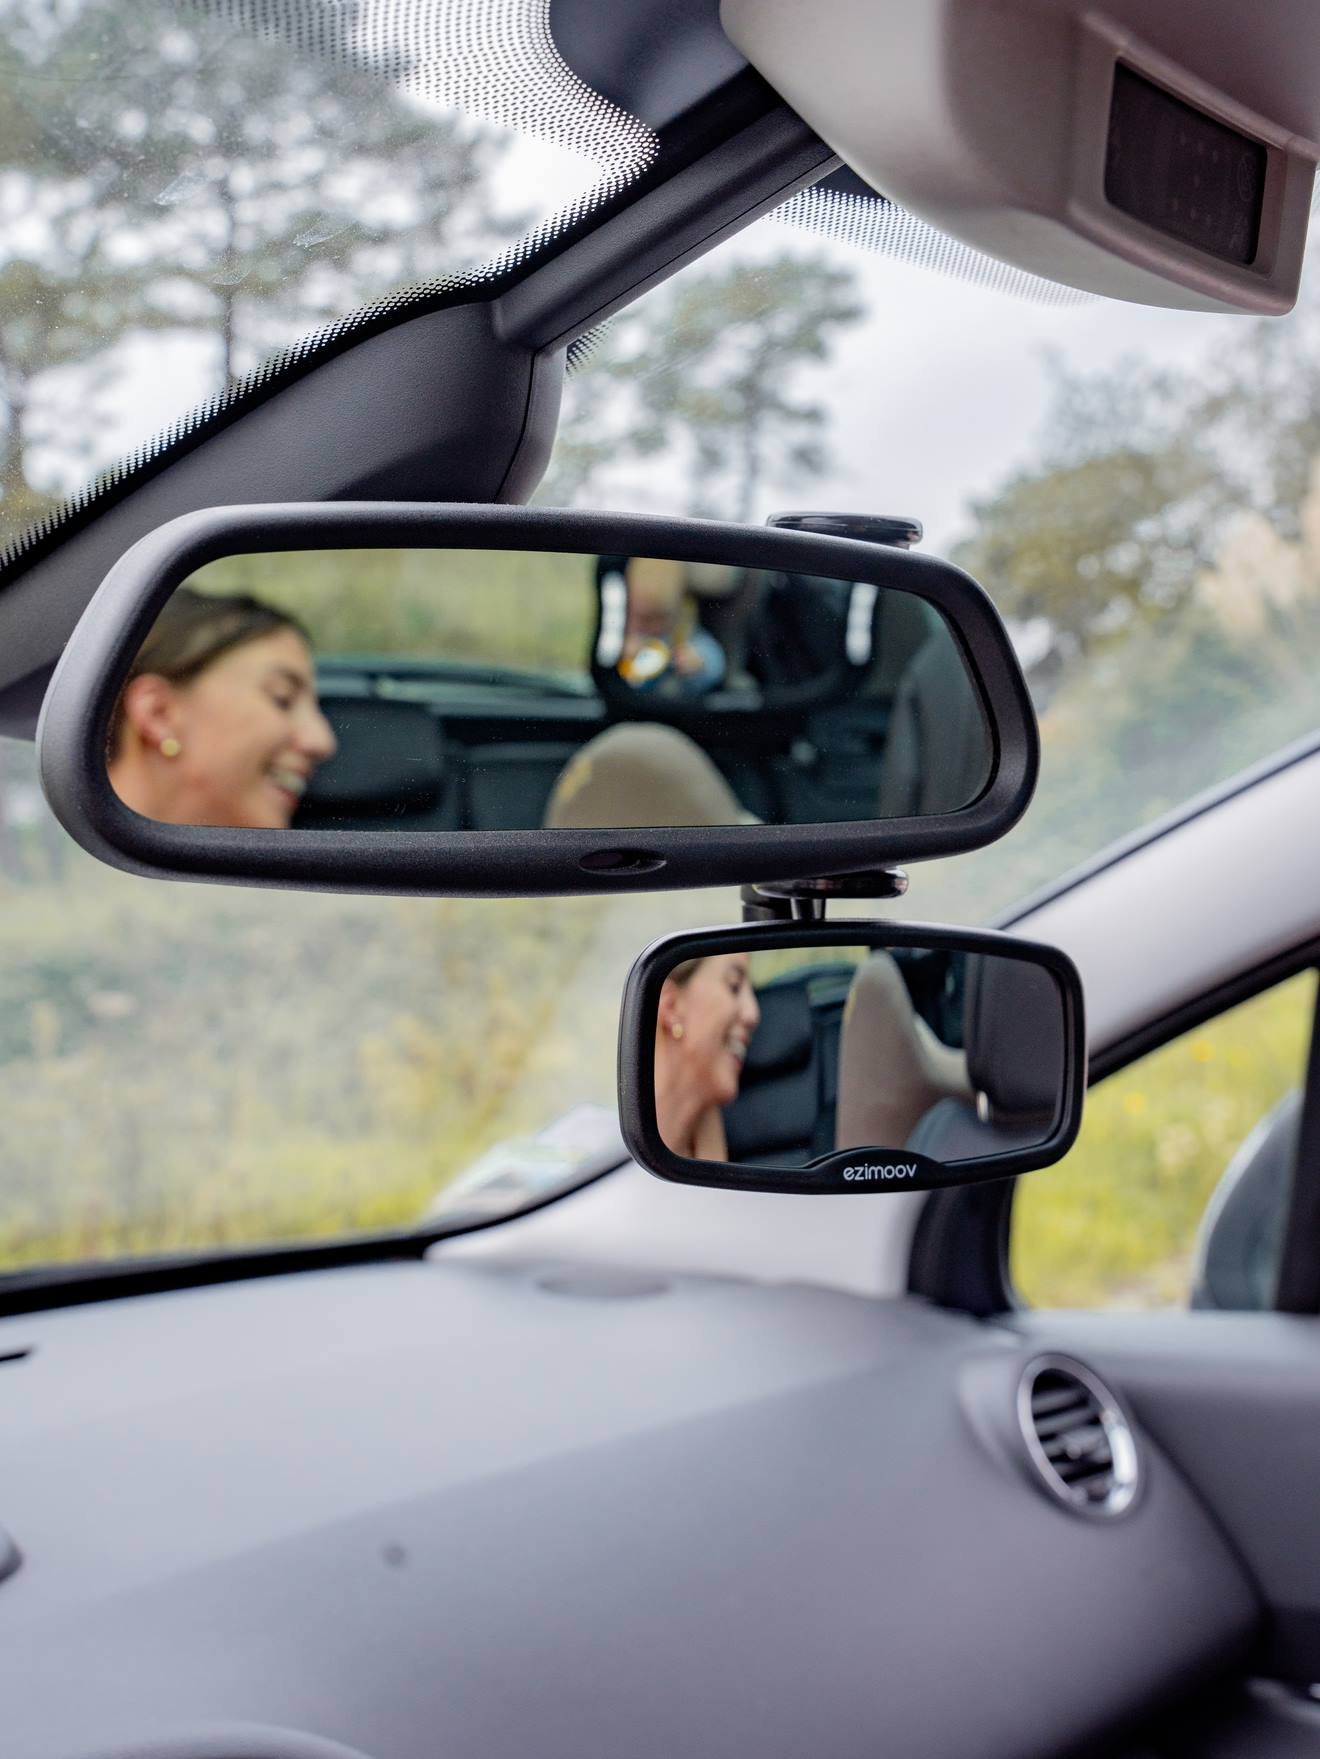 EZI MIRROR CLIP - Auto spiegel baby - met handige klem - achteruitkijkspiegel om je kind te zien - klemt aan de voorspiegel - verstelbaar